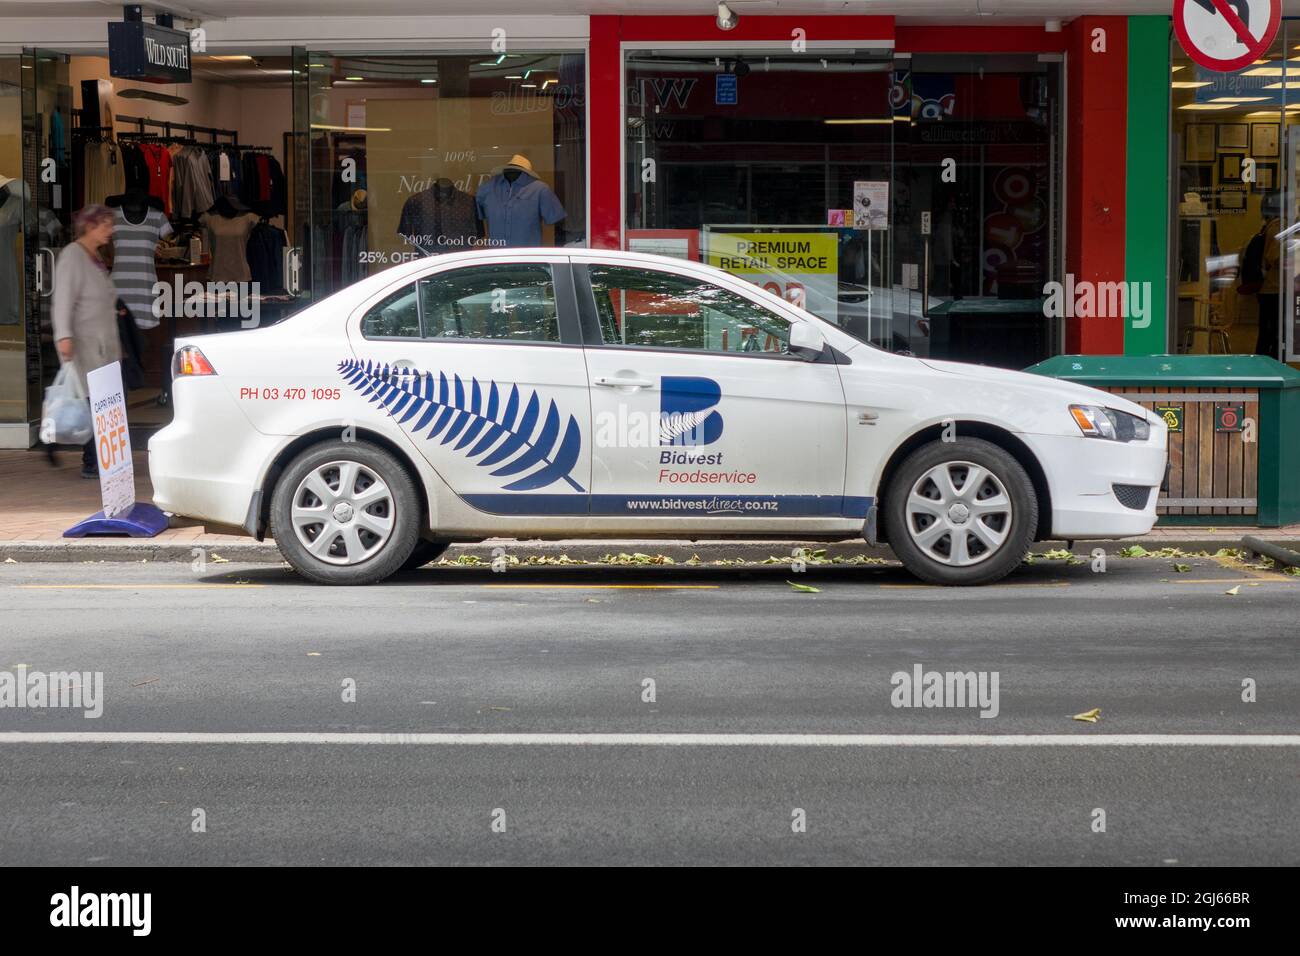 Bidvest Food Service Company voiture garée sur George Street Dunedin Nouvelle-Zélande Banque D'Images